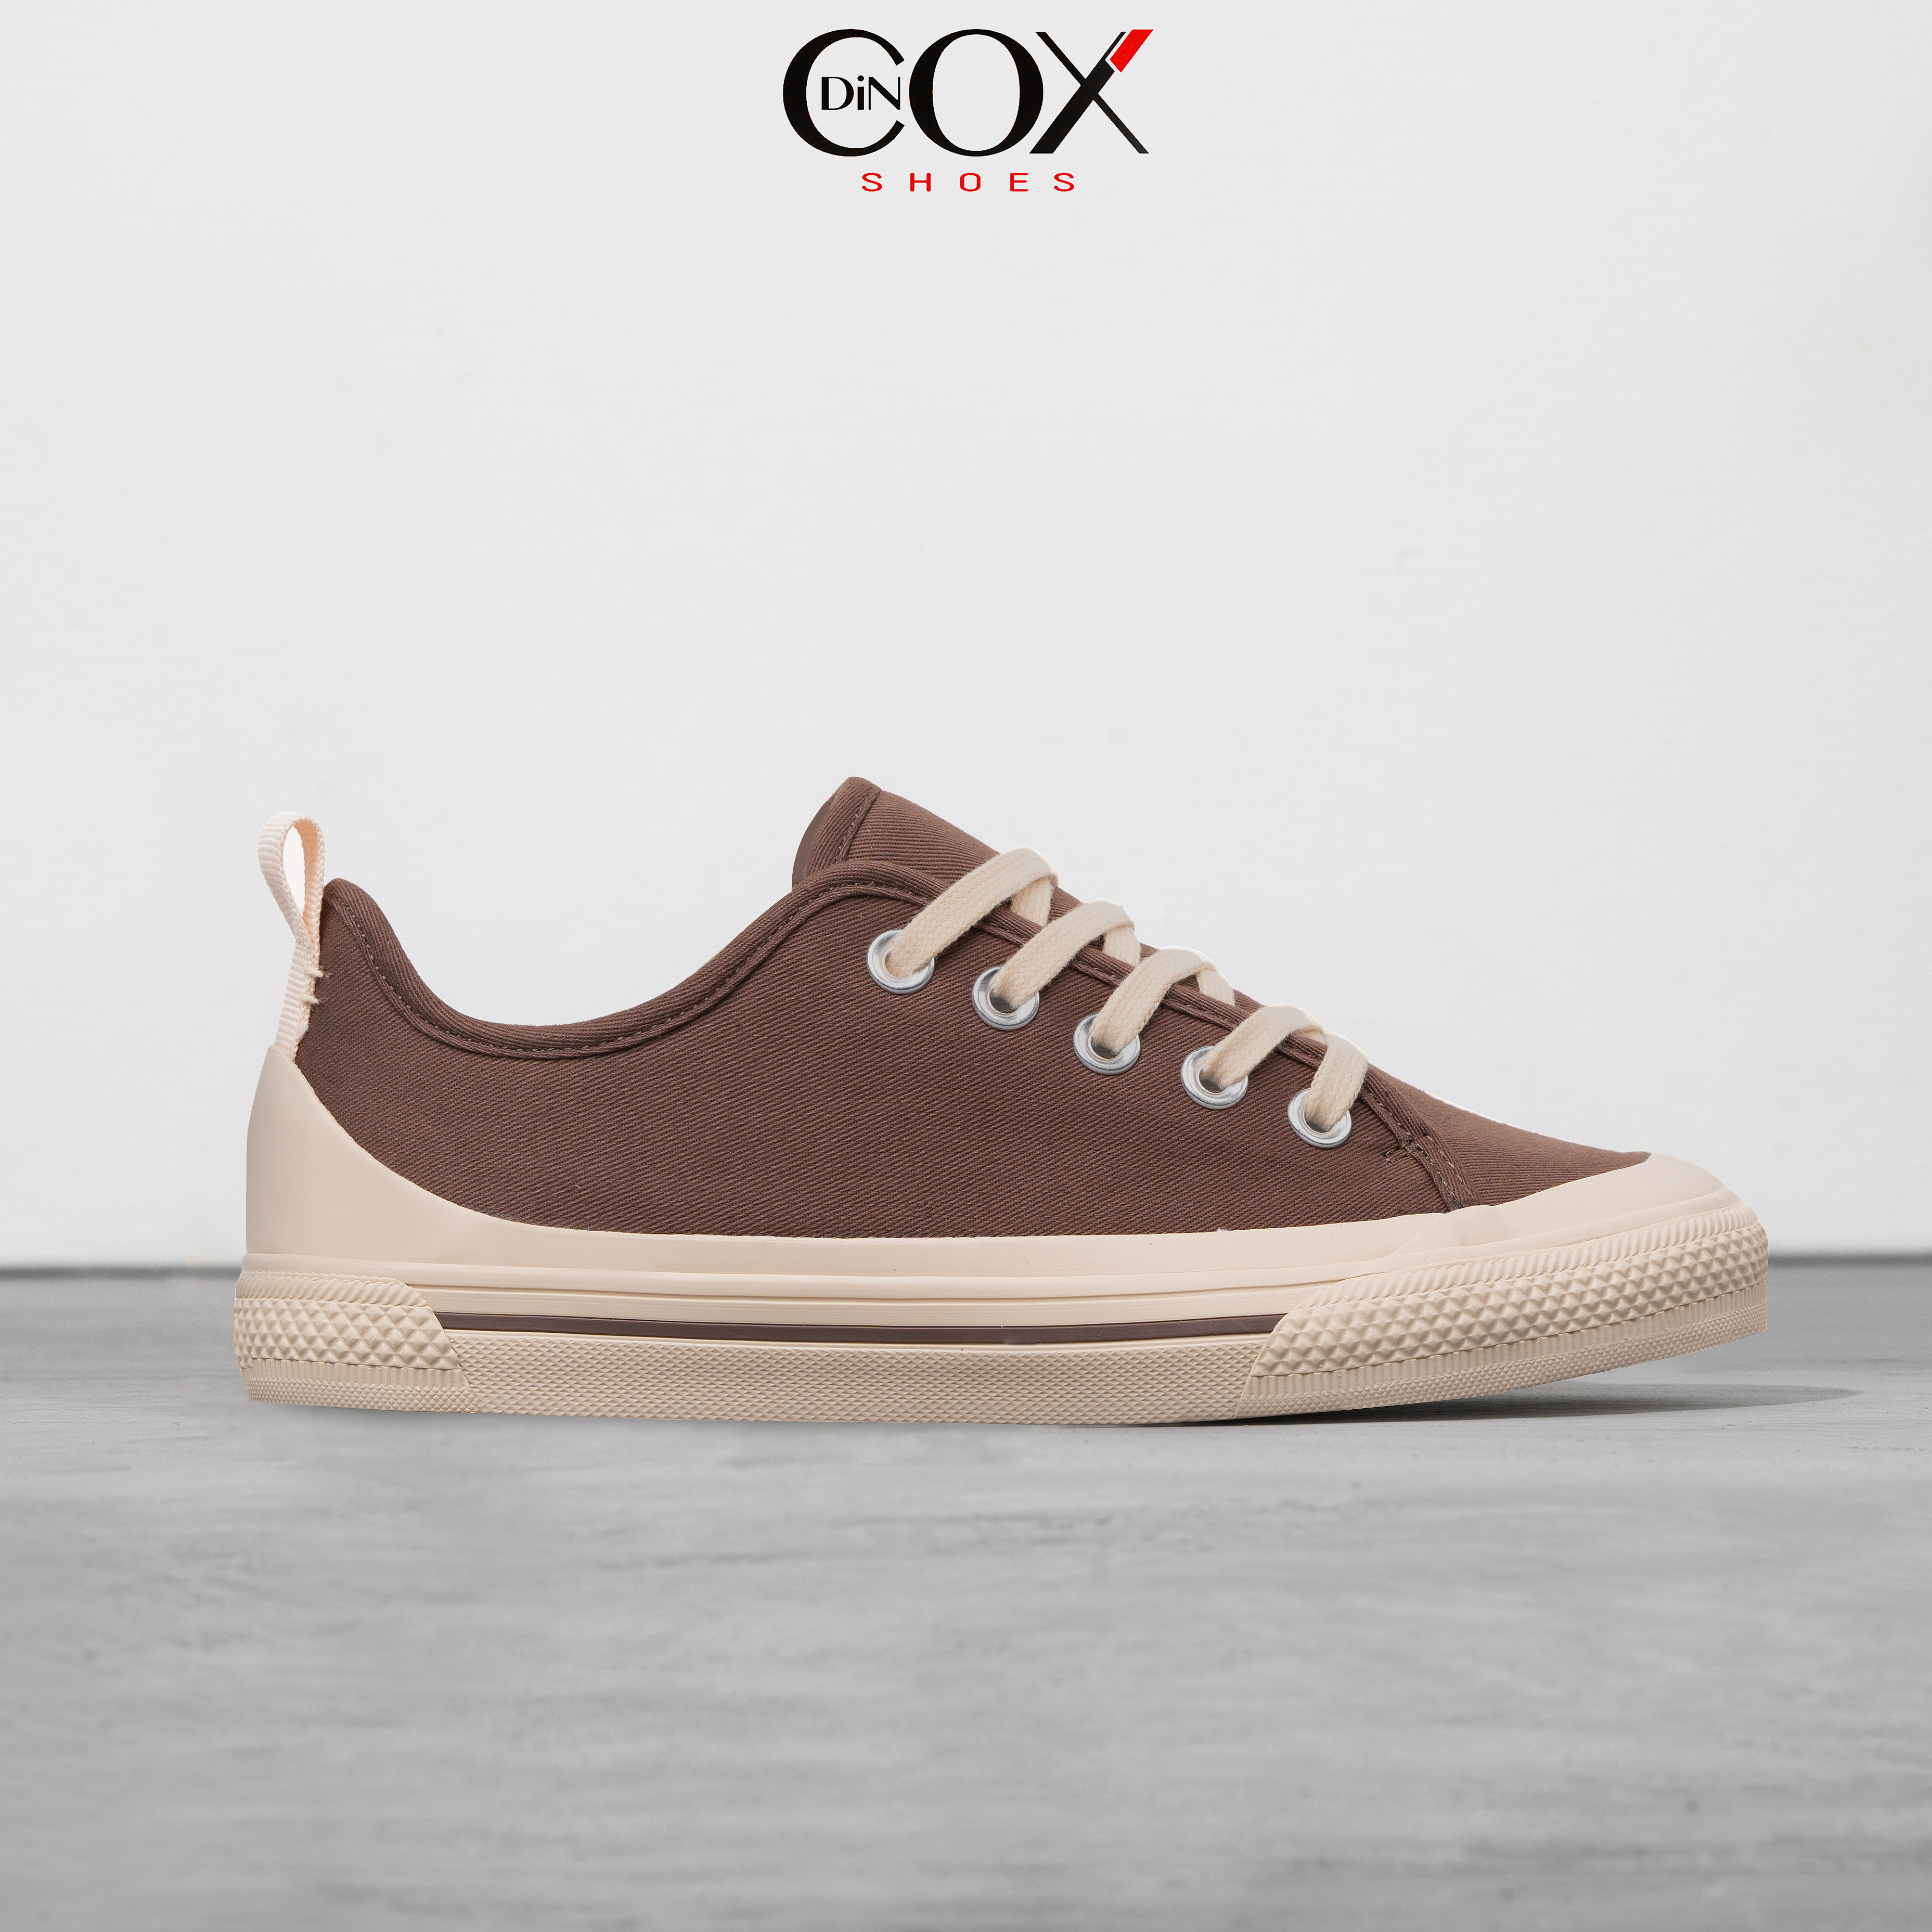 Giày Sneaker Vải Nữ DINCOX C20 Nữ Tính Sang Trọng Chocolate